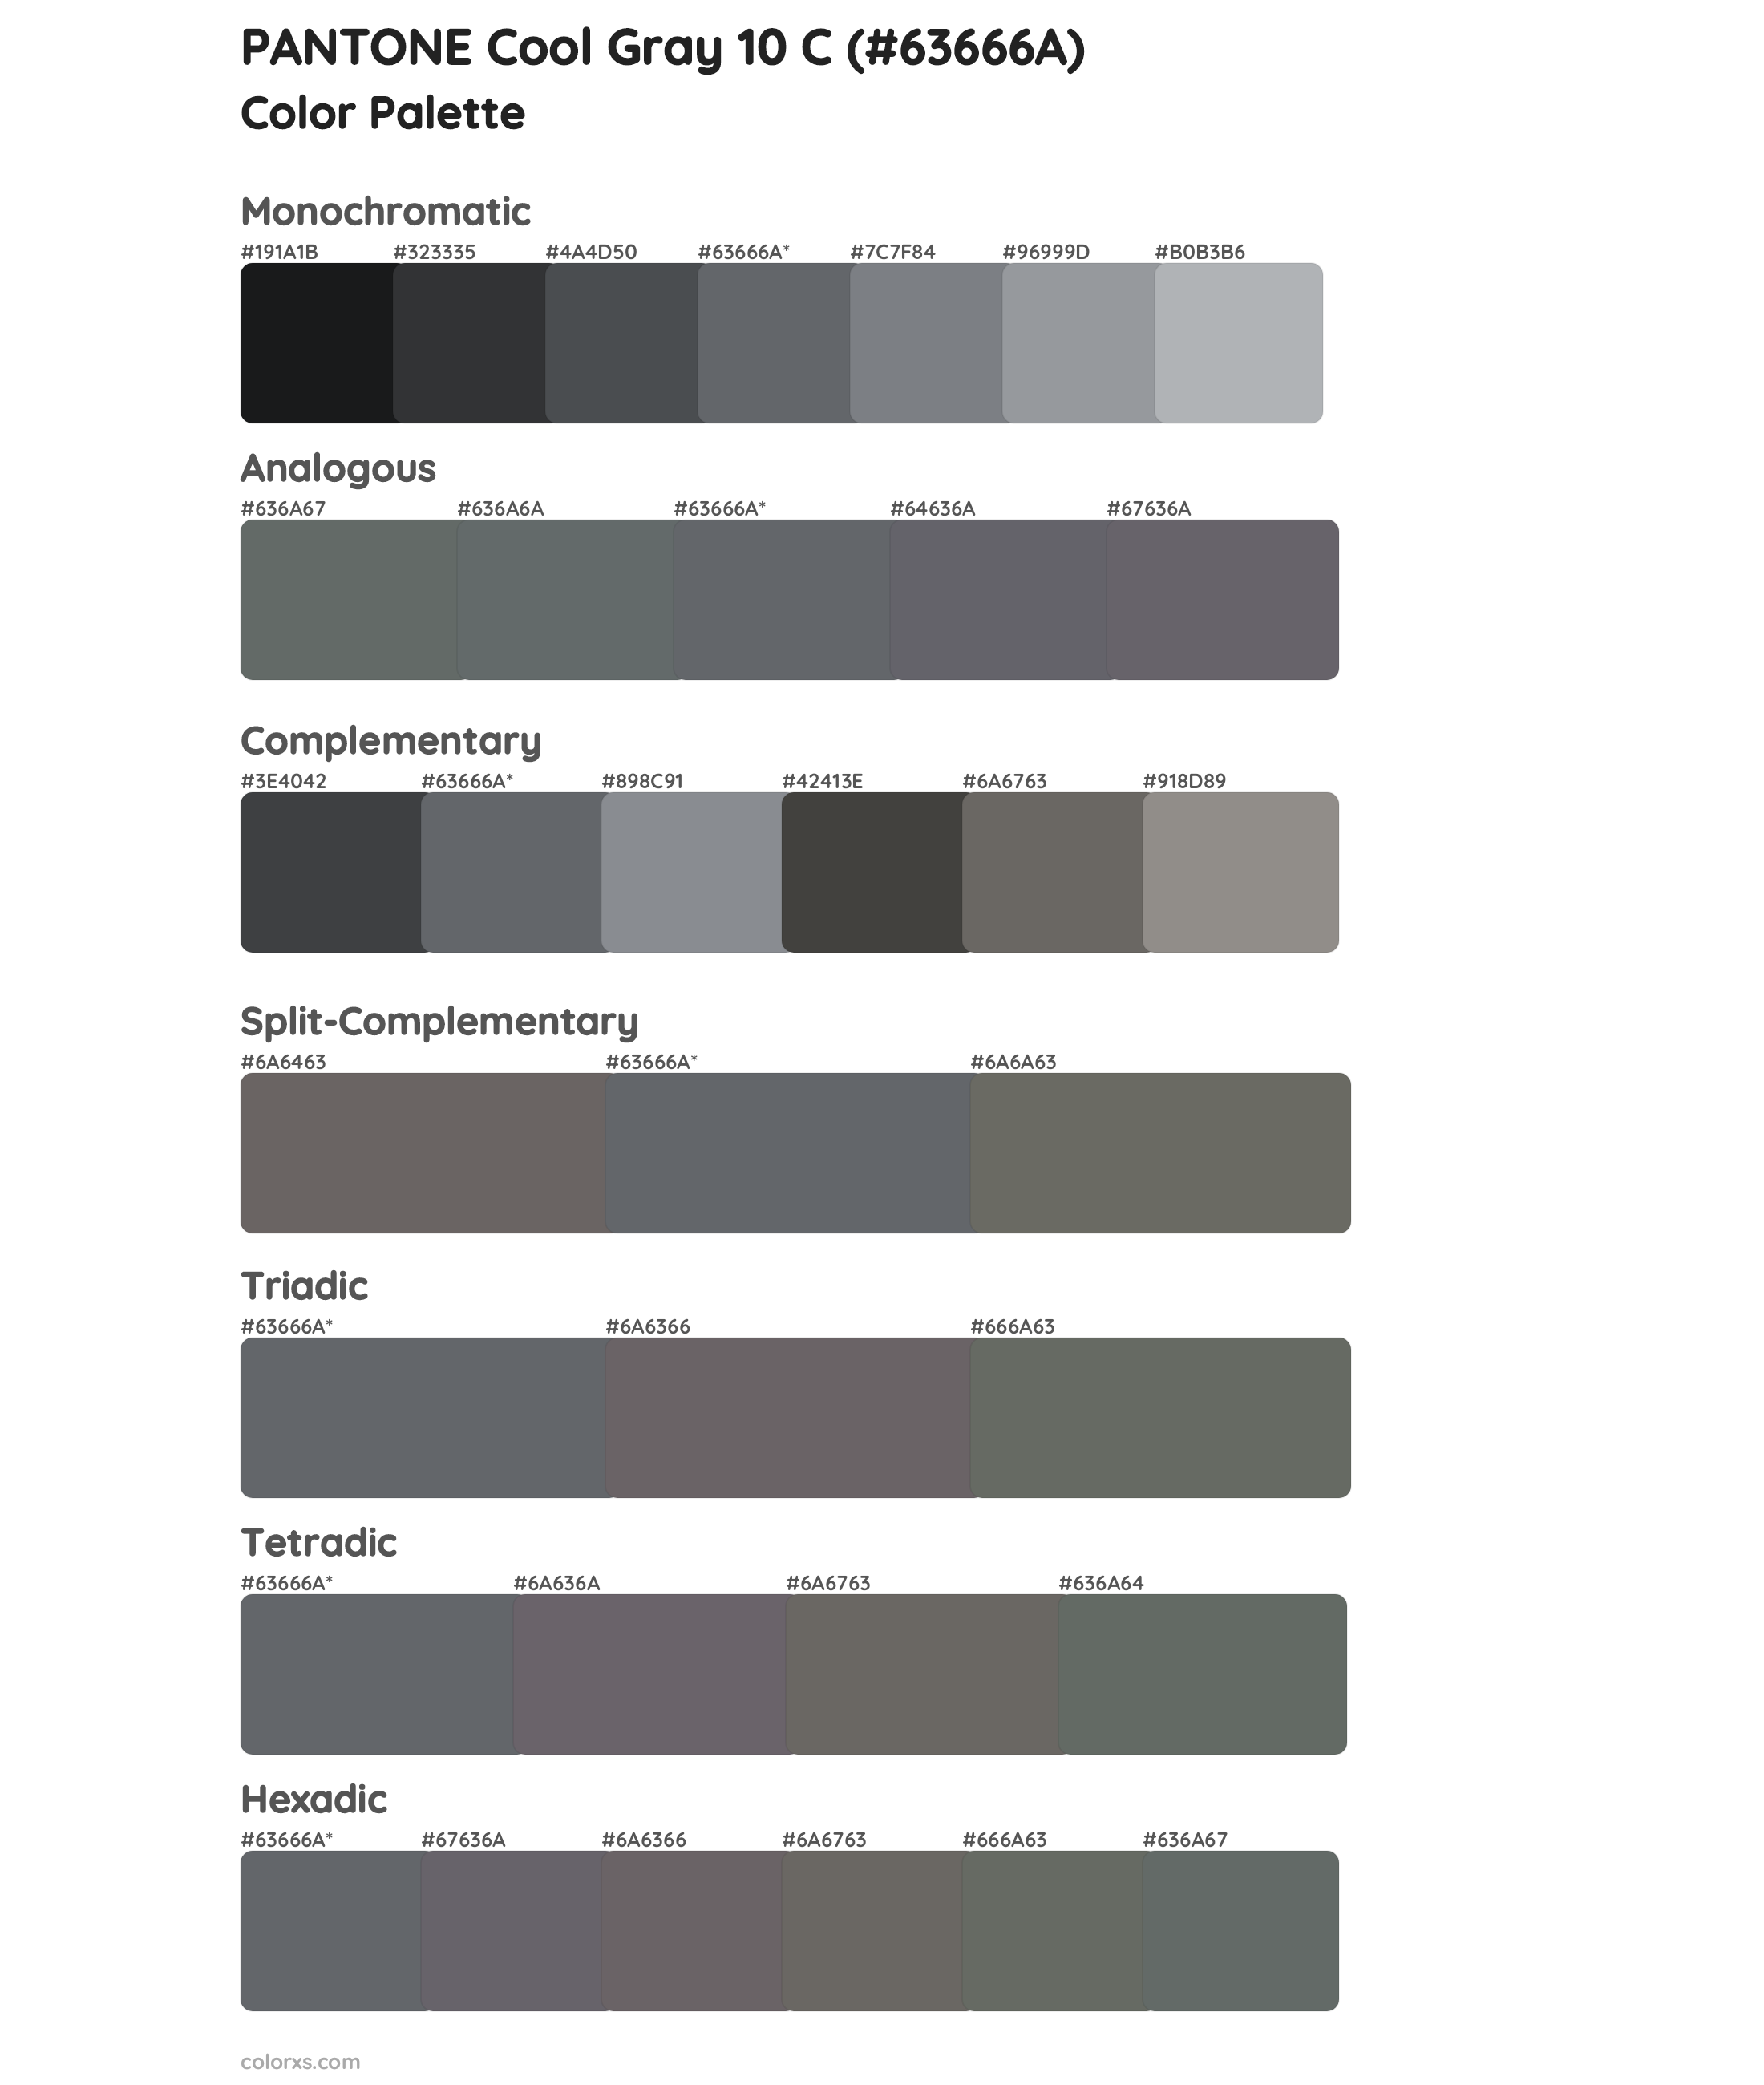 Pantone Cool Gray 10 C Color Palettes And Color Scheme Combinations